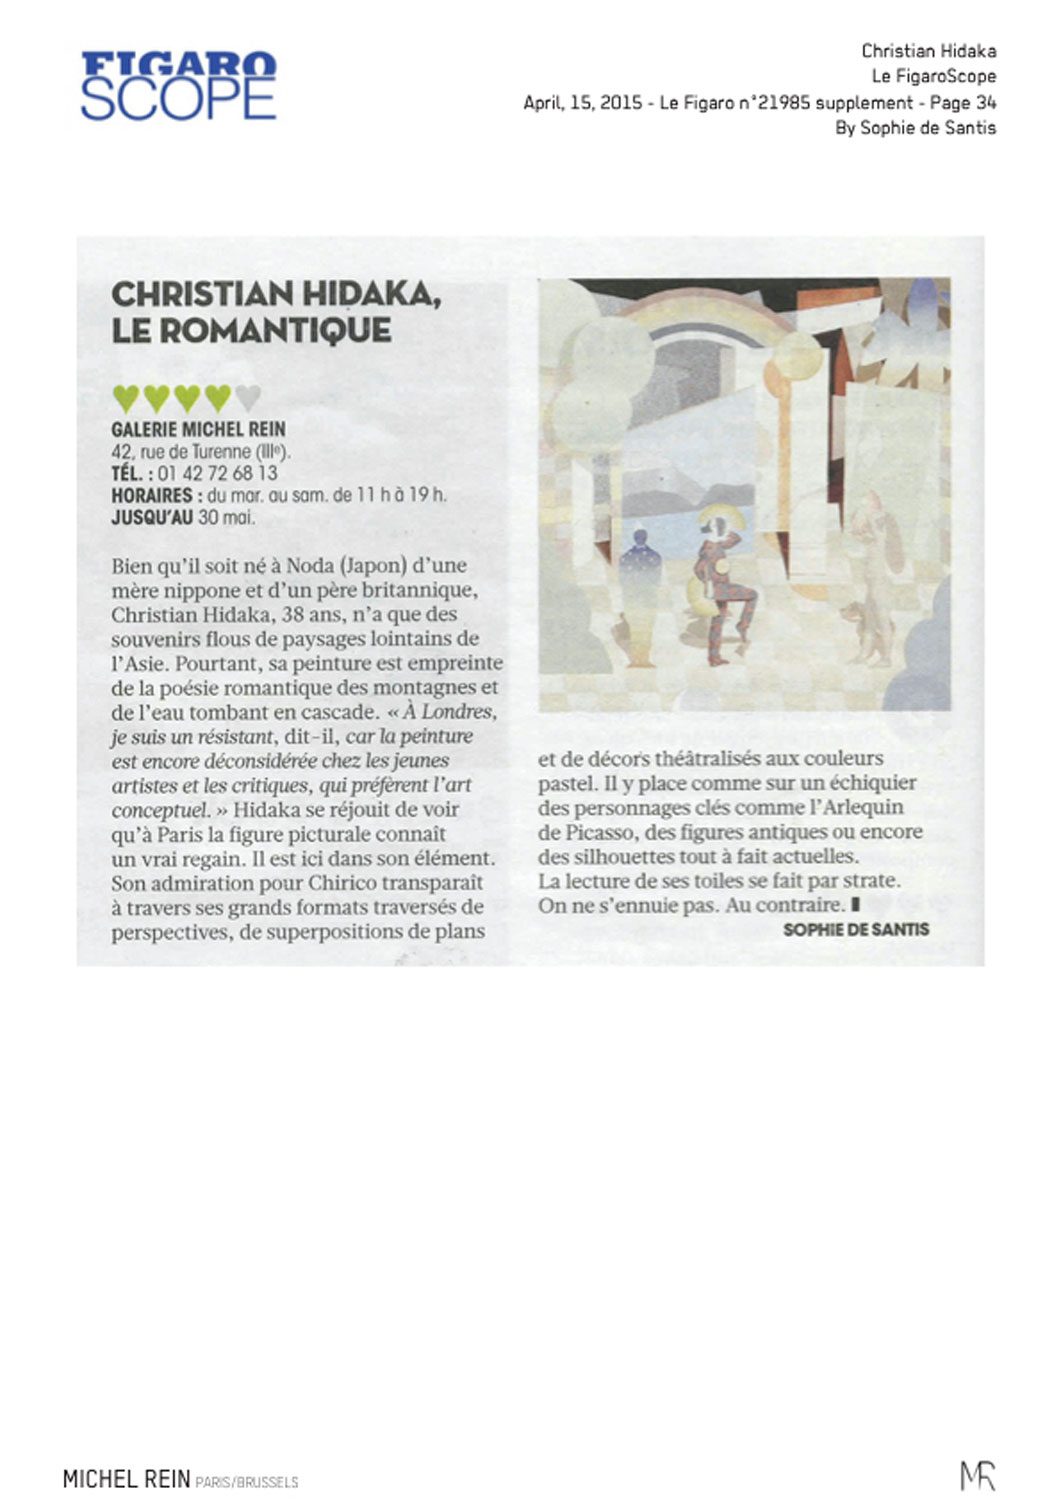 Christian Hidaka, Le Romantique - Le FigaroScope